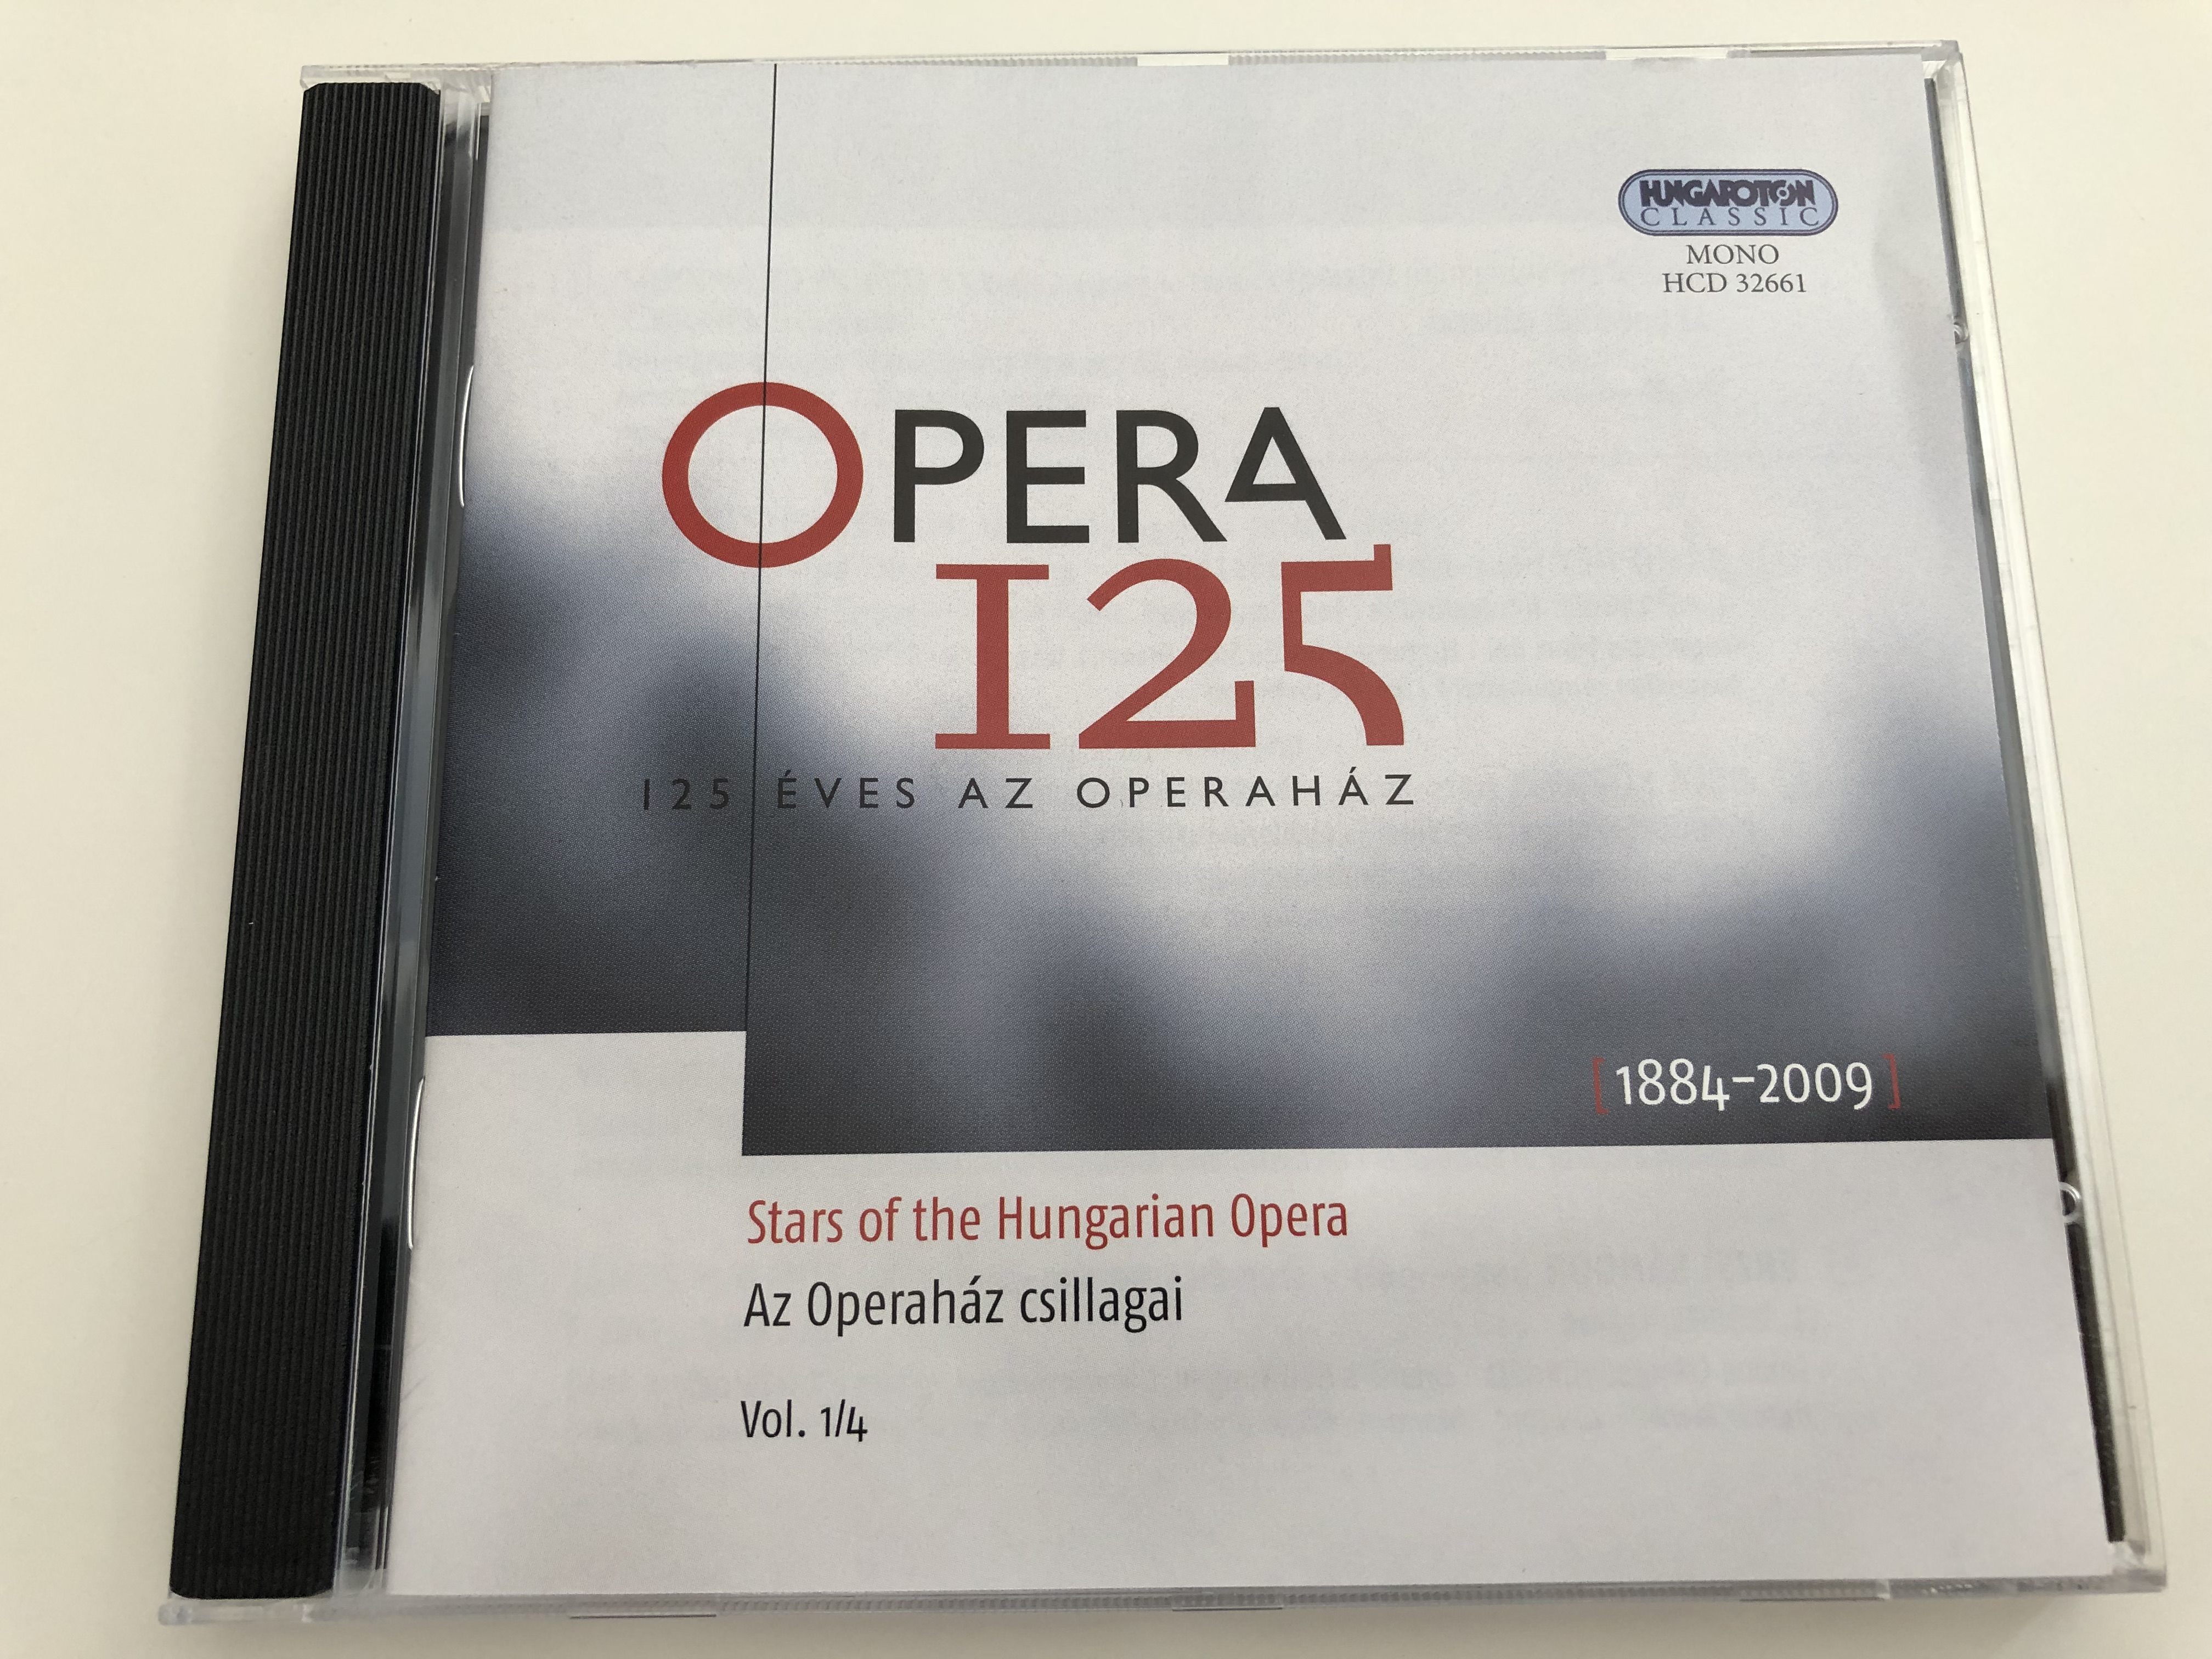 opera-125-125-ves-az-operah-z-125-years-of-the-hungarian-opera-house-1884-2009-stars-of-the-hungarian-opera-az-operah-z-csillagai-vol.-14-hungaroton-classic-hcd-32661-audio-cd-2009-1-.jpg